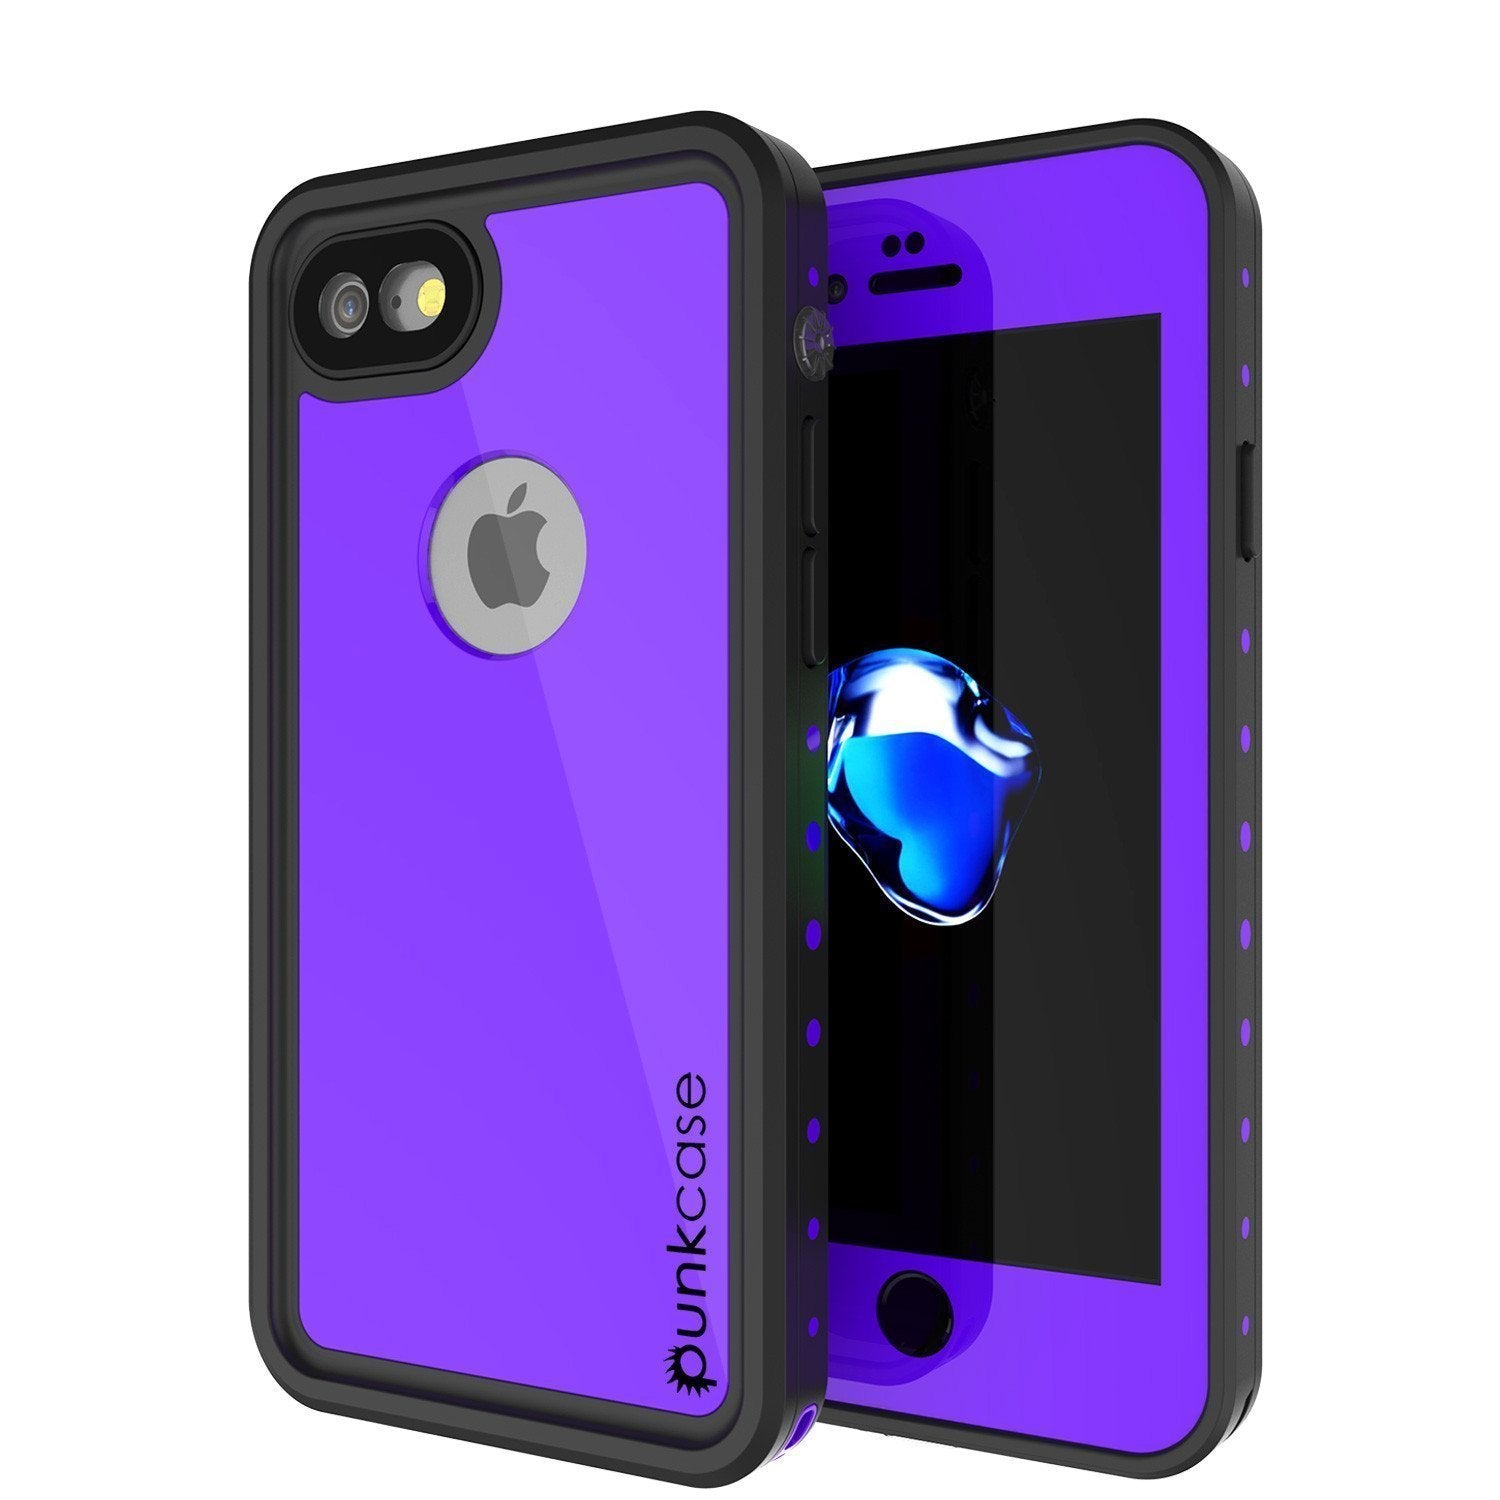 iPhone SE (4.7") Waterproof Case, Punkcase [Purple] [StudStar Series] [Slim Fit][IP68 Certified]  [Dirtproof] [Snowproof] (Color in image: purple)